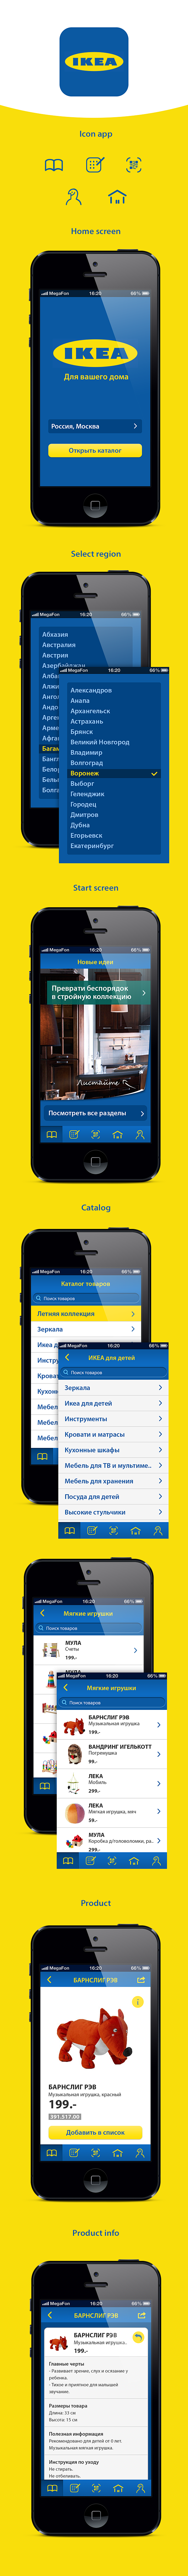 IKEA app redesign (C...